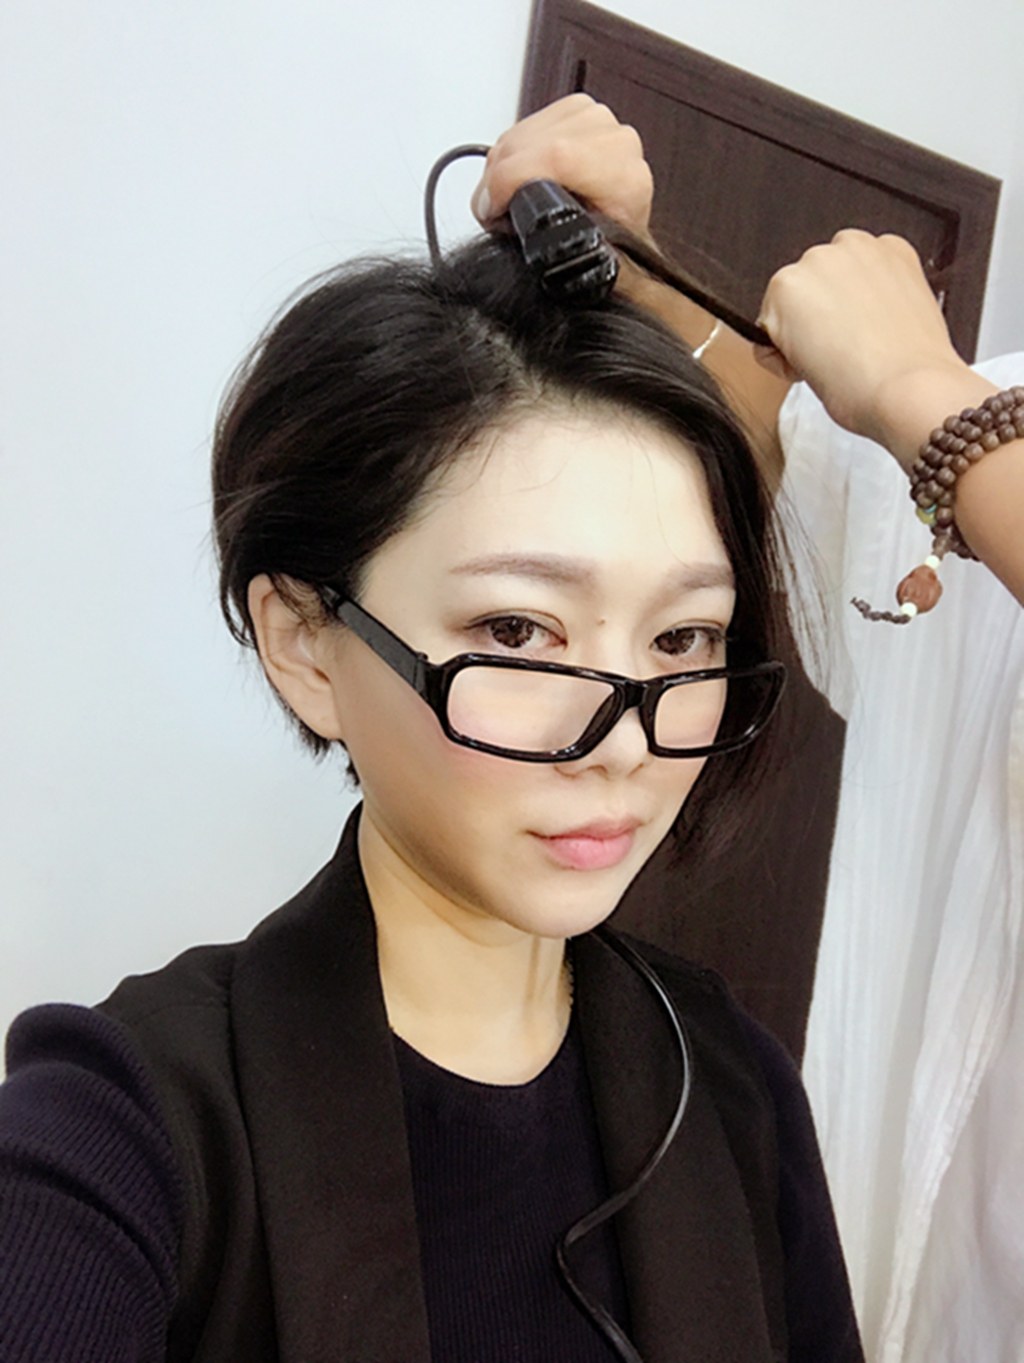 Host Liu Min's picture